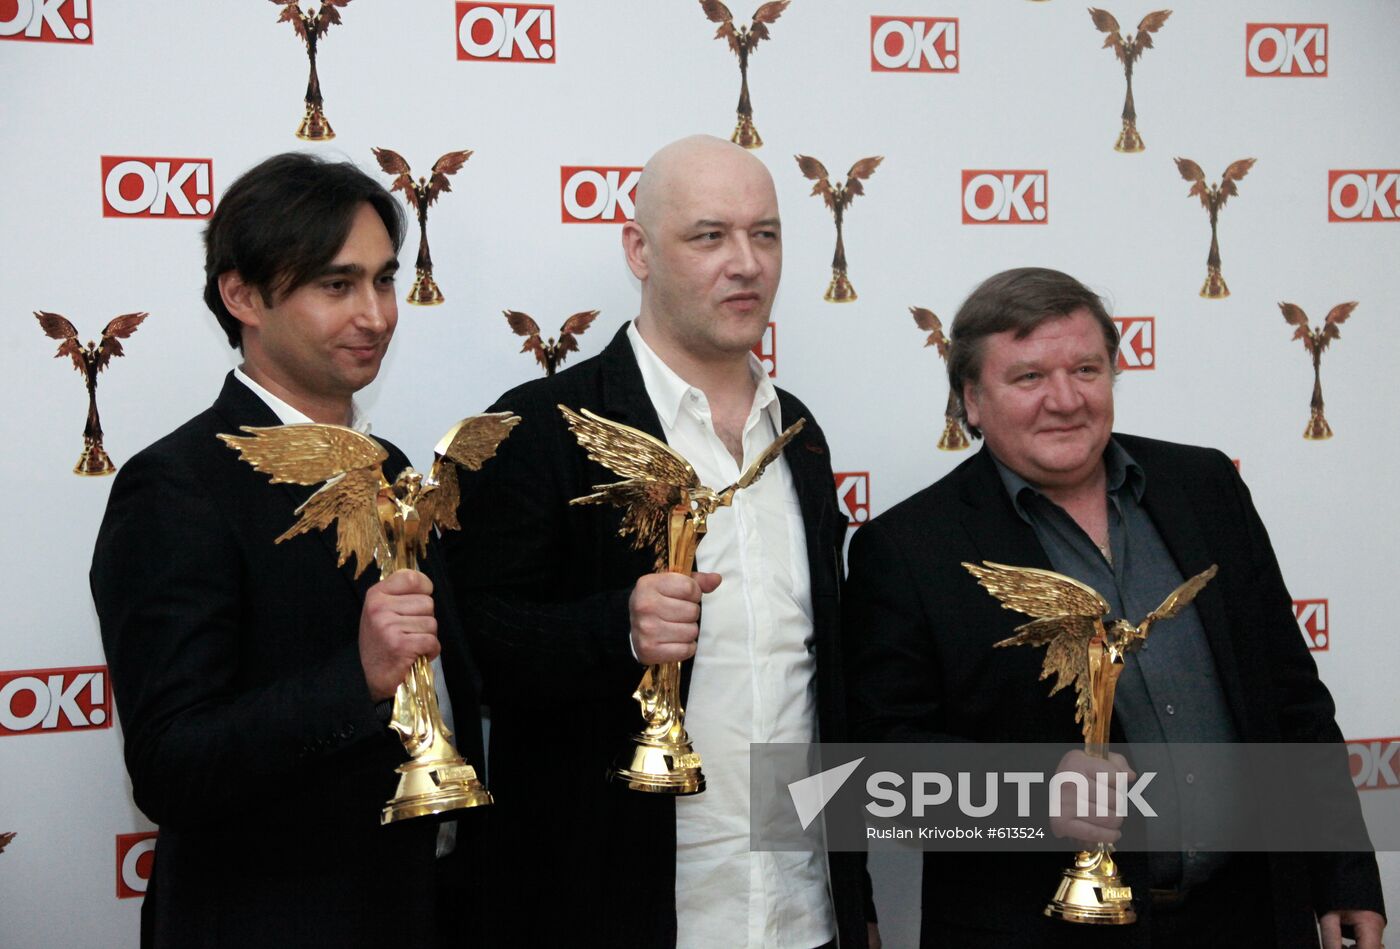 Sergei Dreiden, Maxim Sukhanov and Roman Madyanov